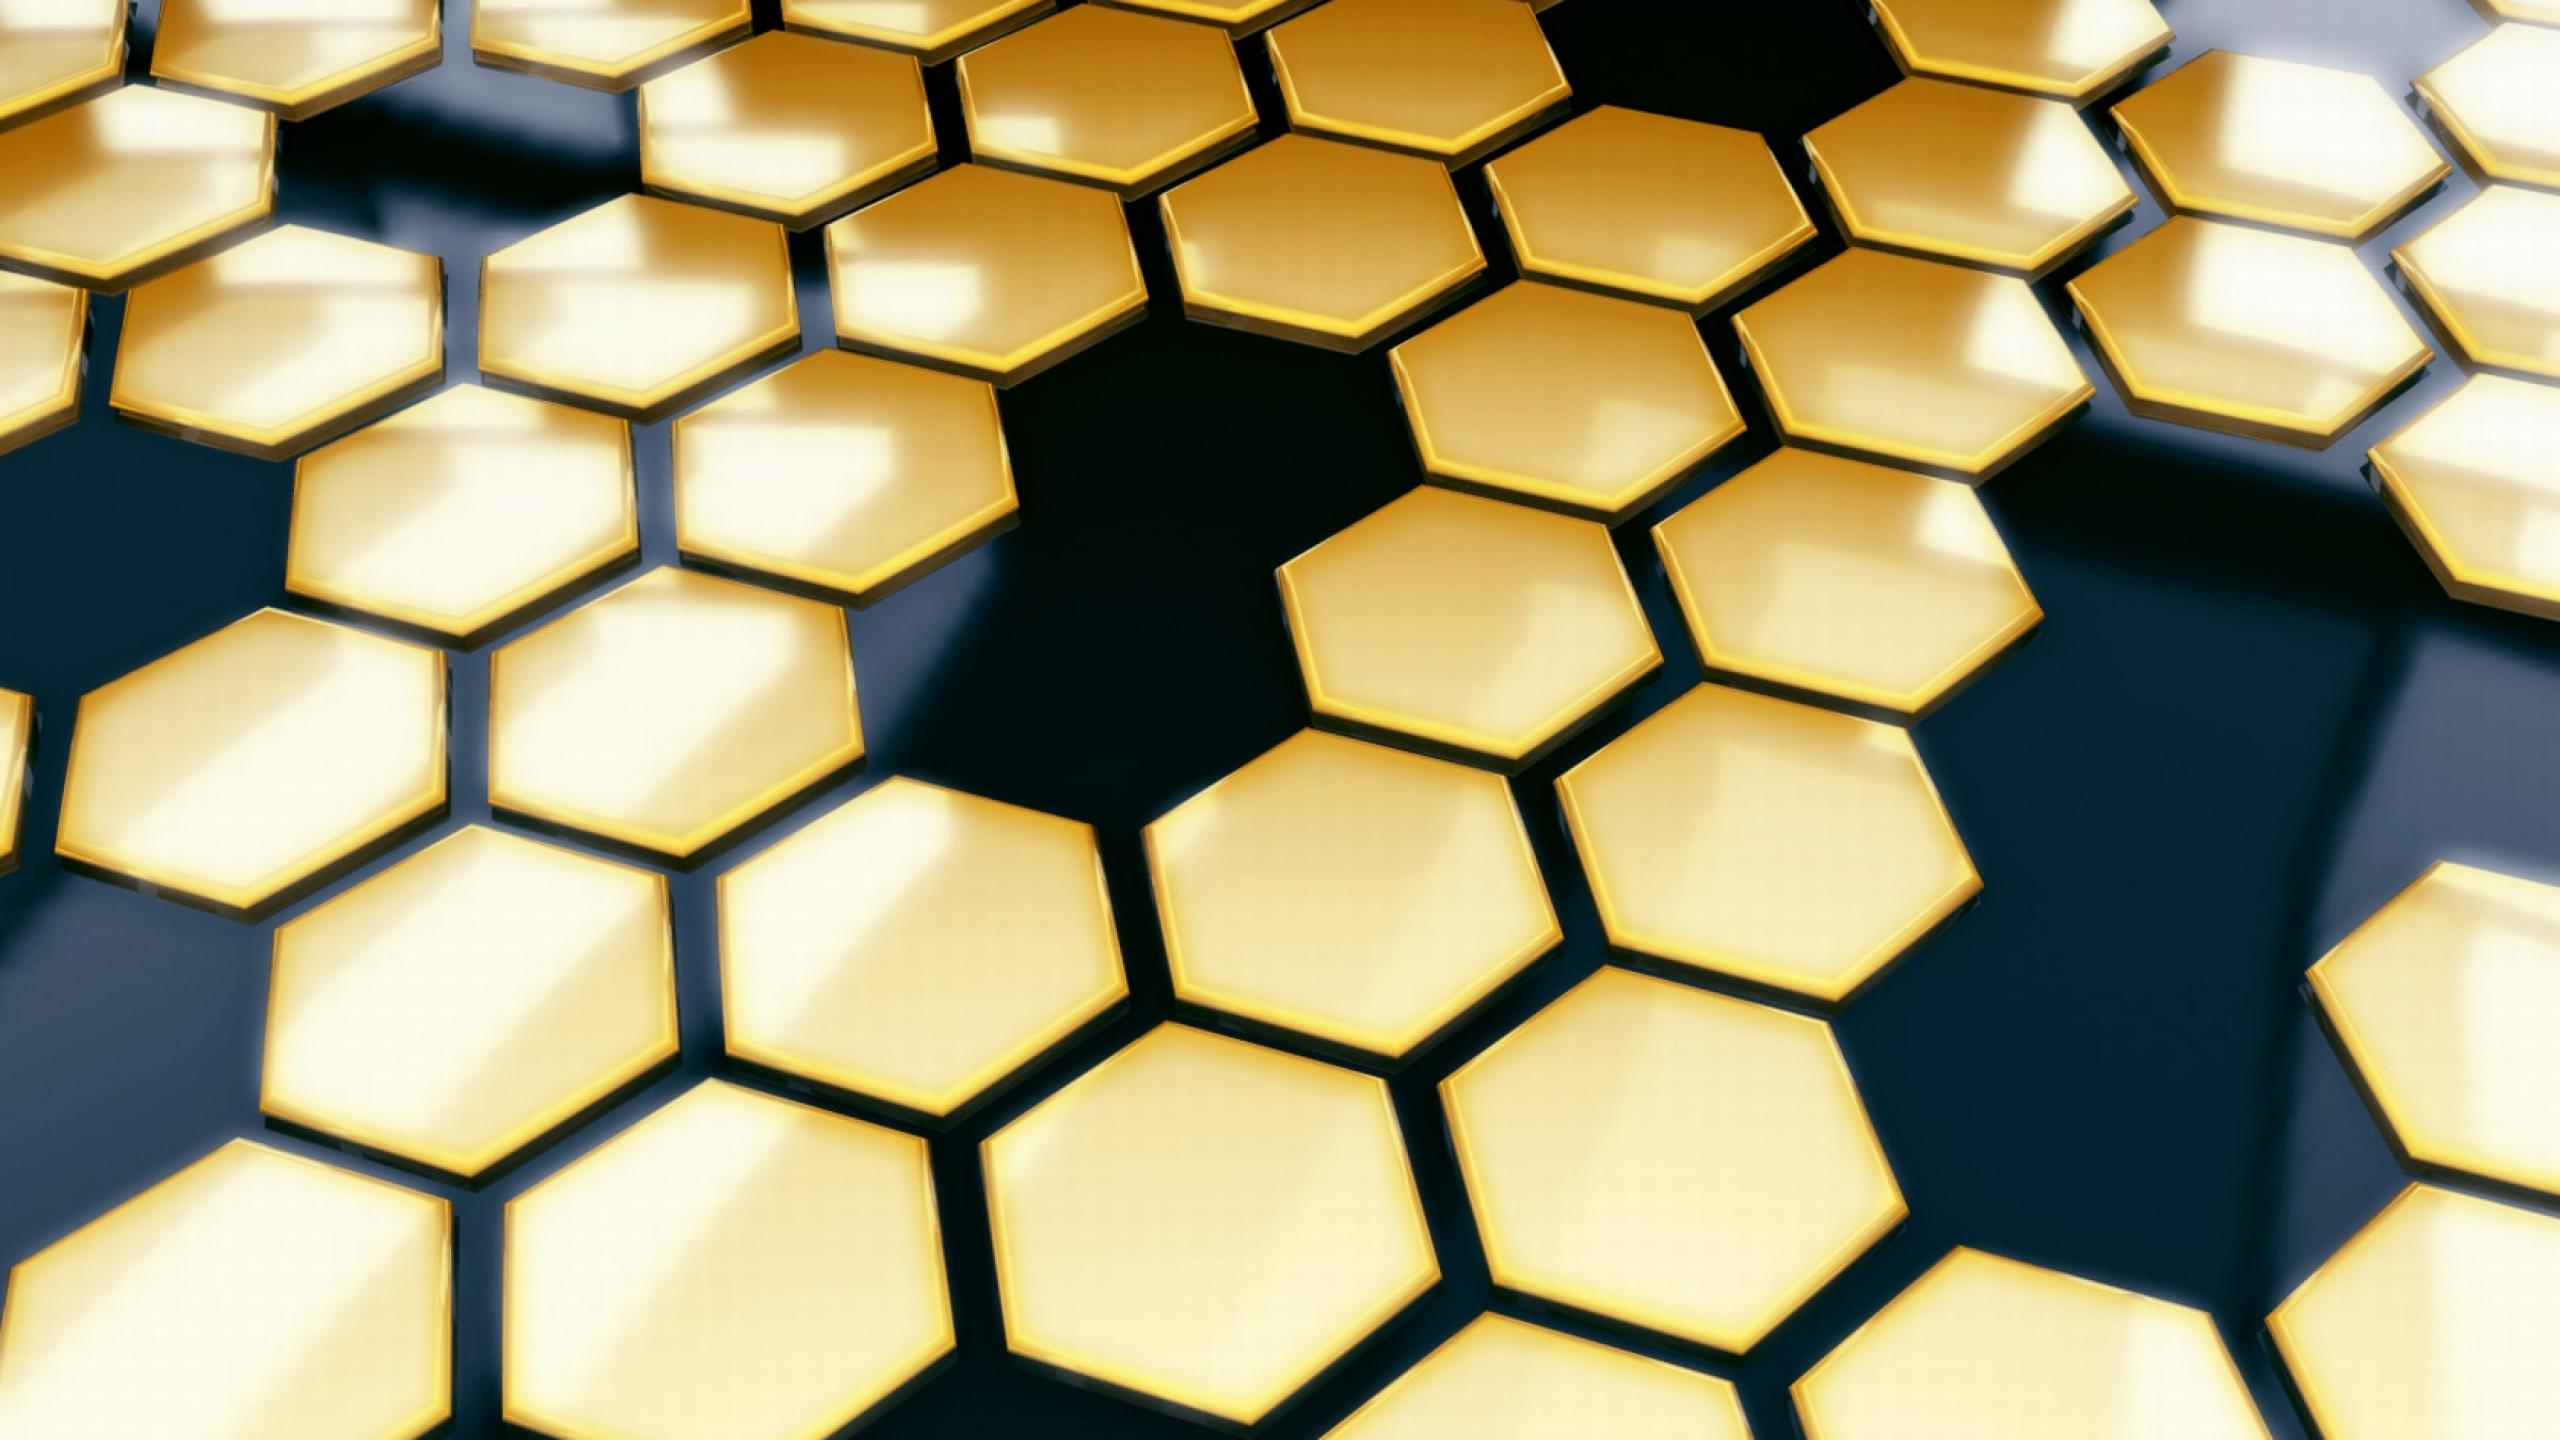 Fondos De Panal De Abeja - Black And Gold Honeycomb , HD Wallpaper & Backgrounds